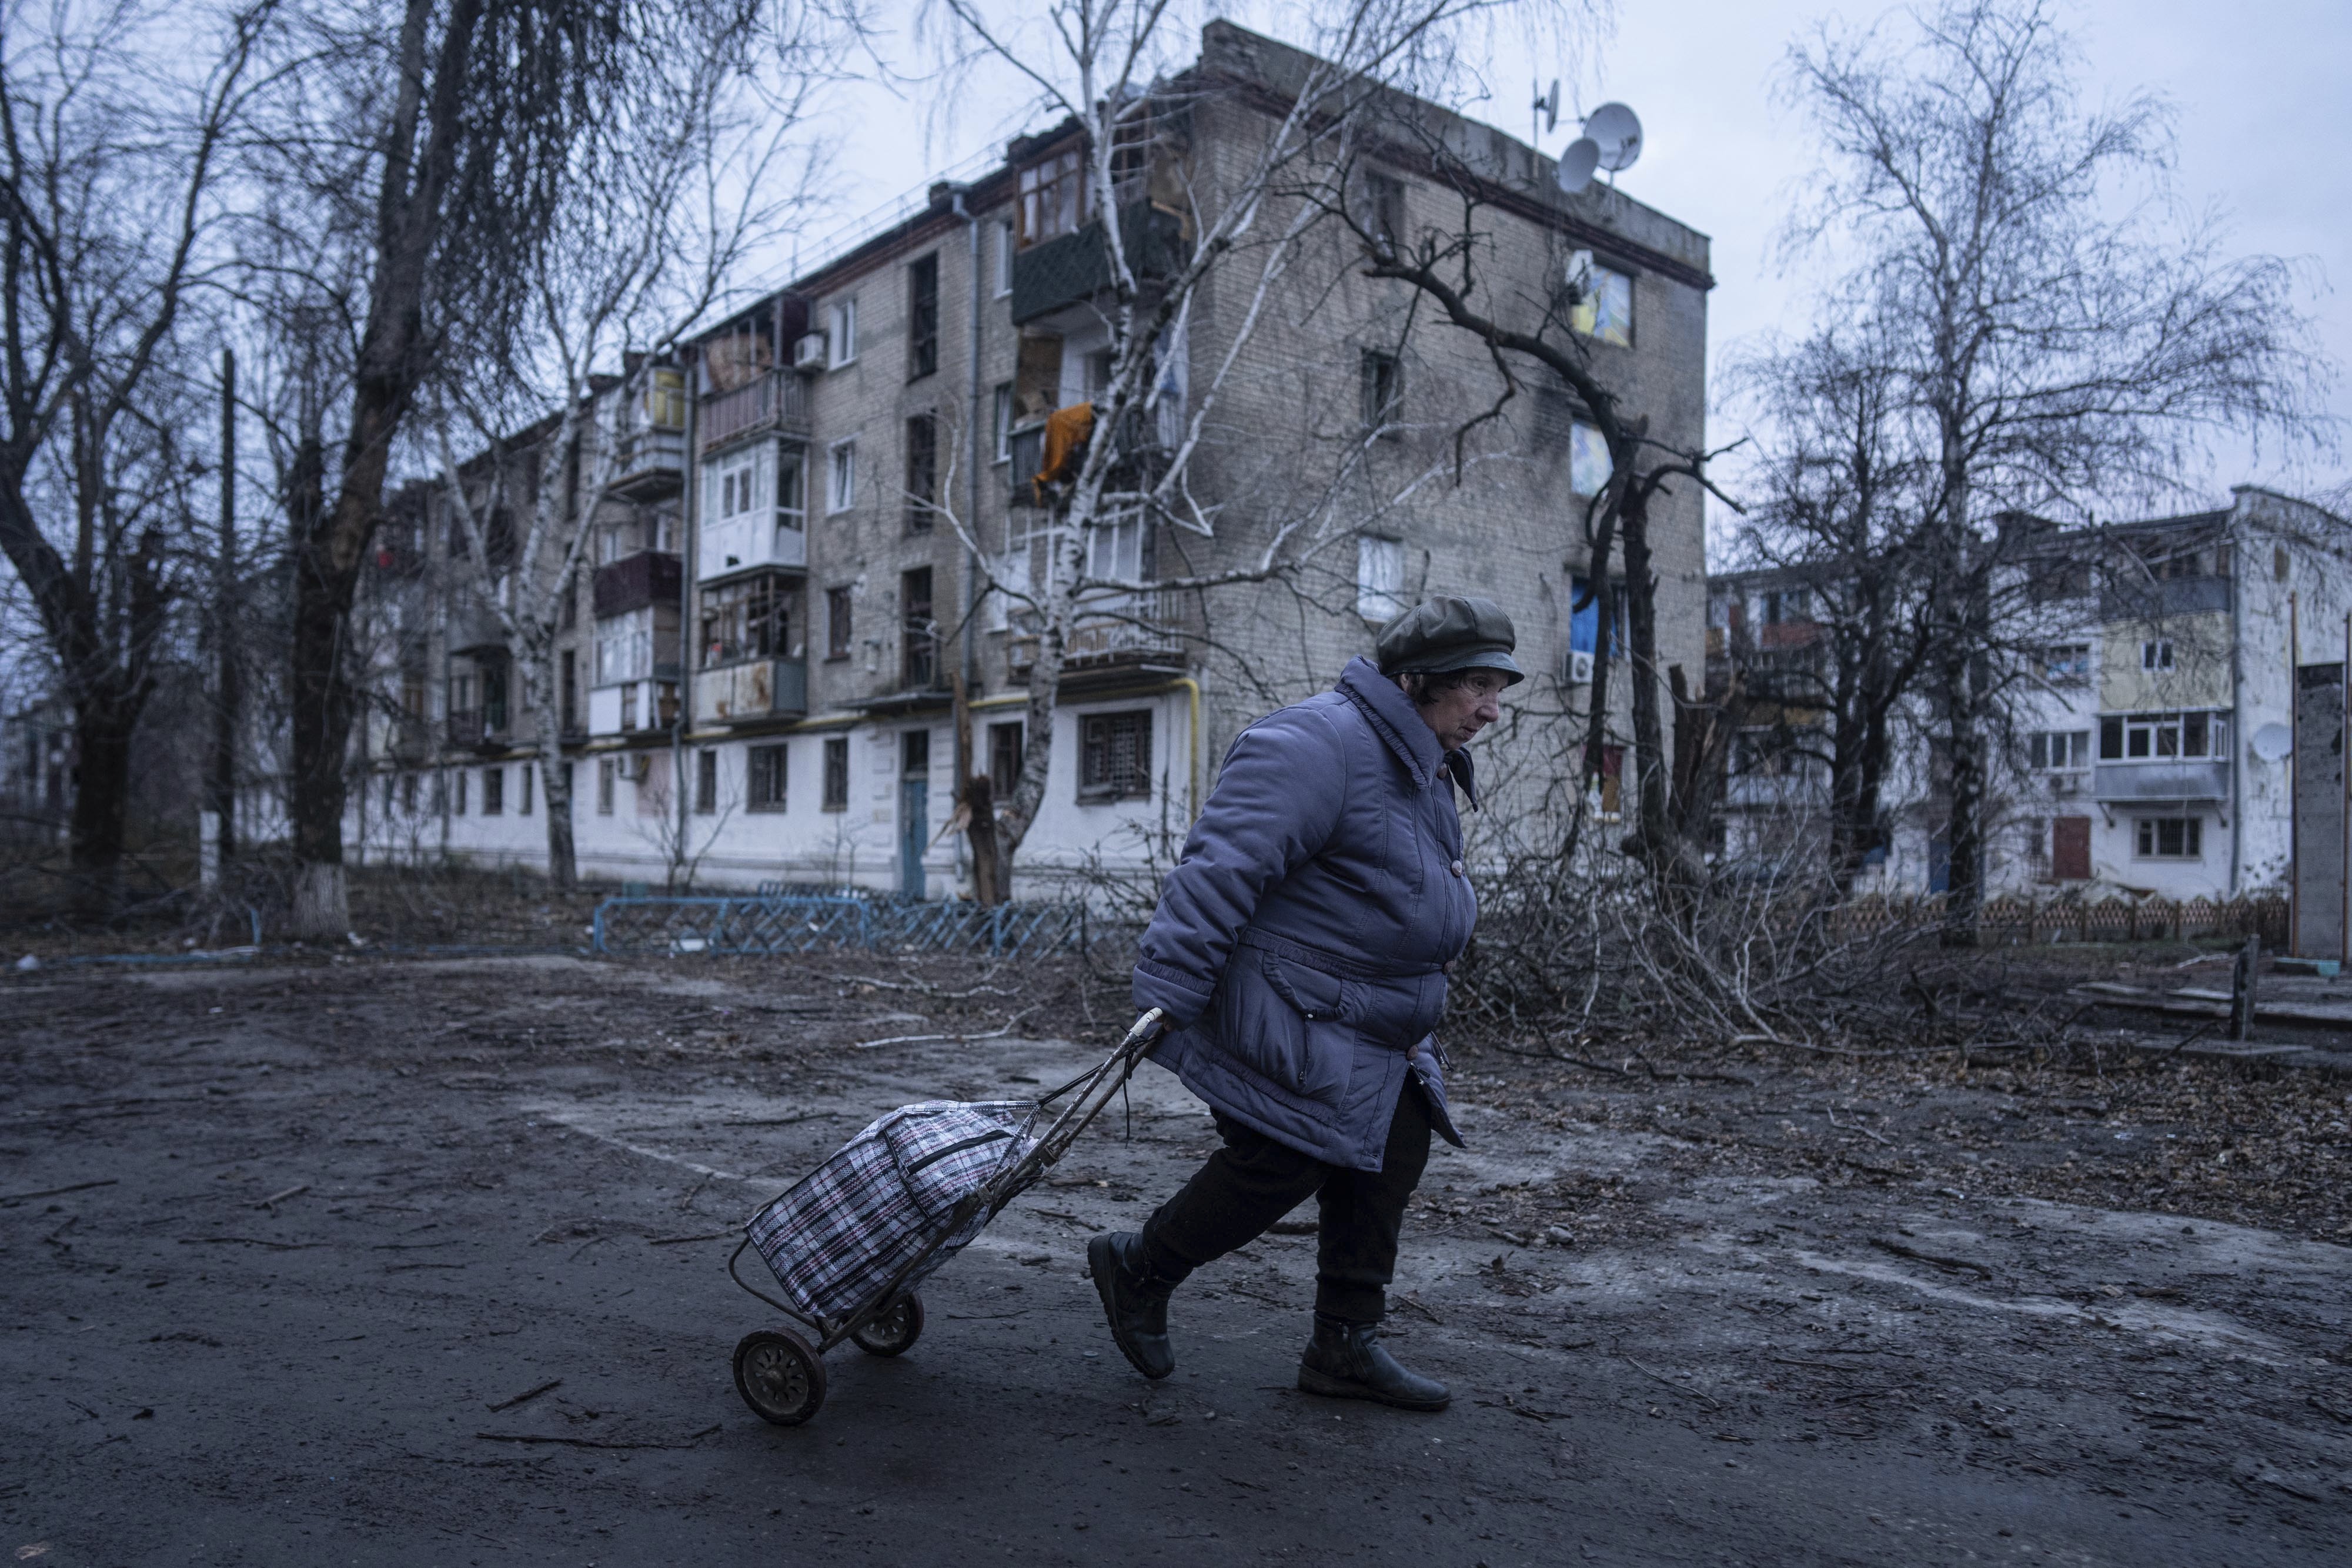 Una mujer camina a un centro de distribución de ayuda humanitaria frente a una vivienda dañada por los ataques rusos en Kupiansk, en la región de Járkiv, Ucrania, el miércoles 26 de diciembre de 2022. (AP Foto/Evgeniy Maloletka)